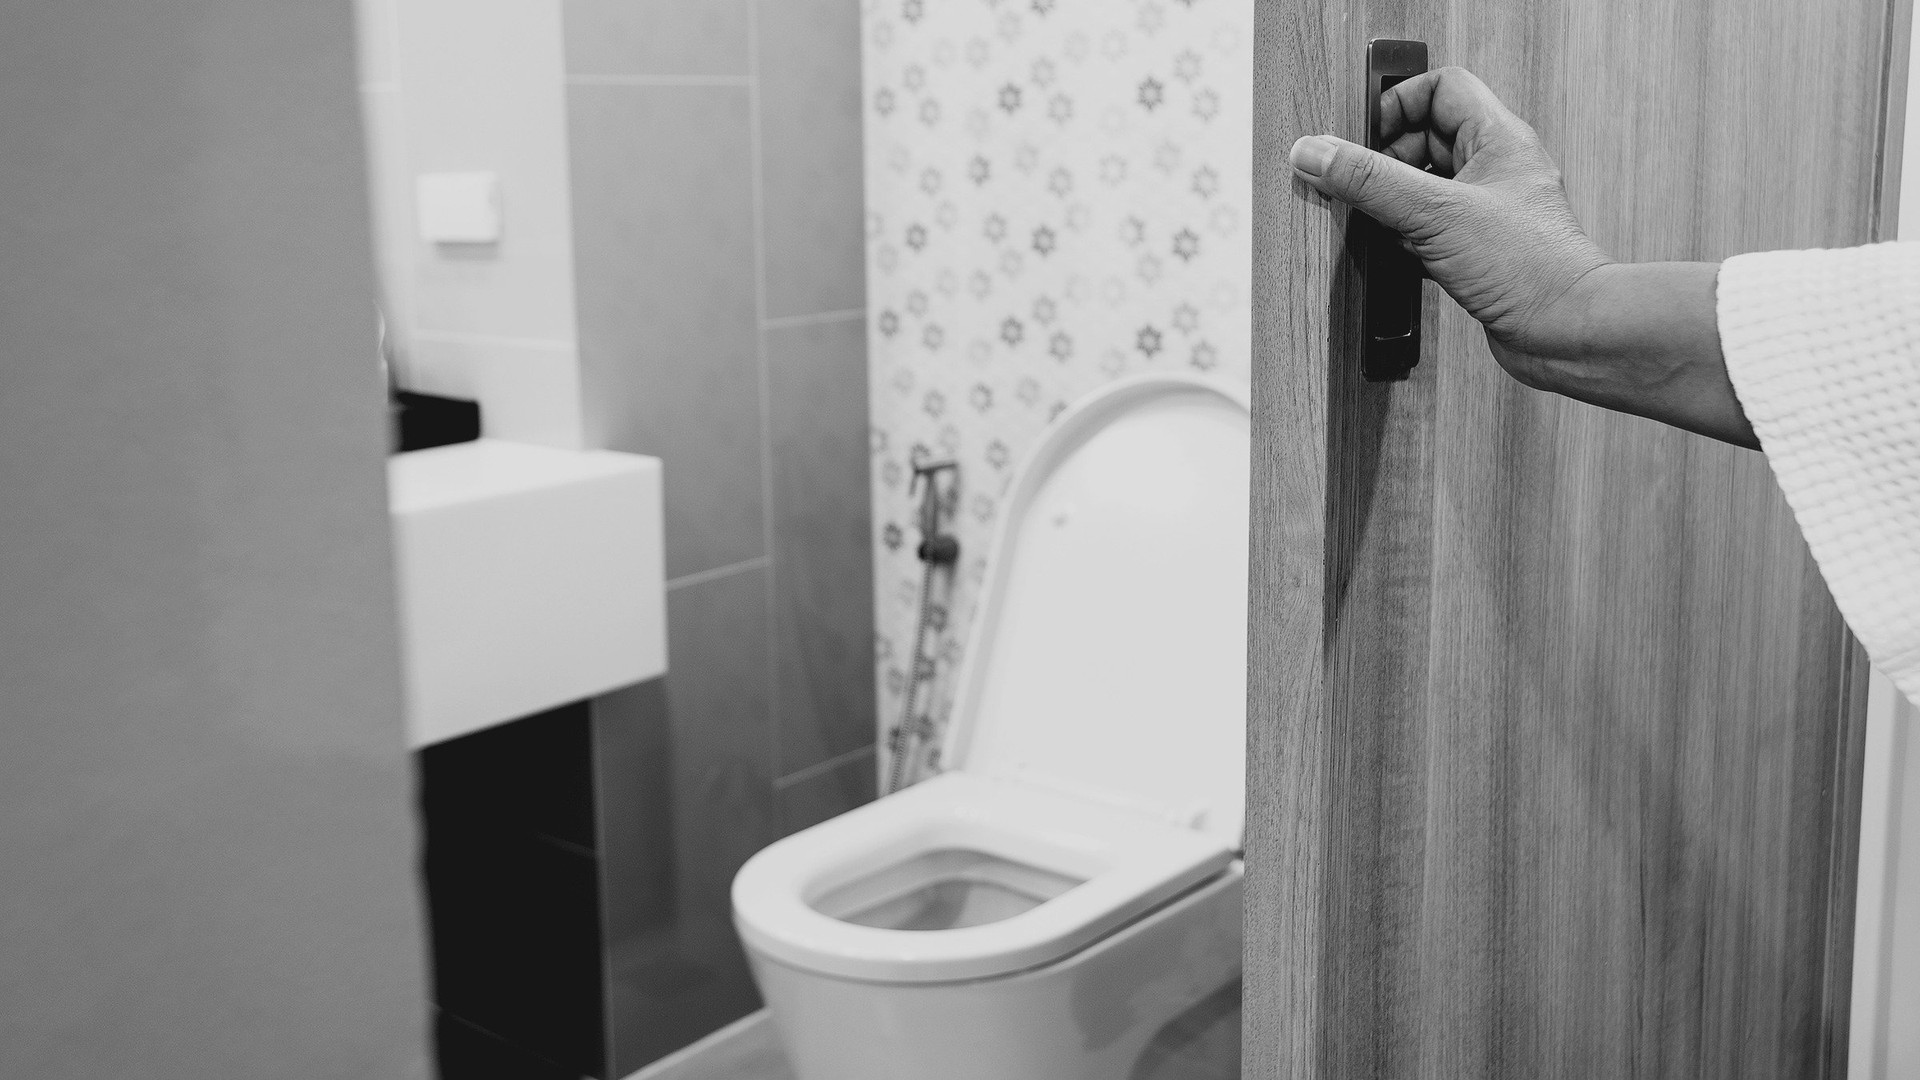 Đi vệ sinh thường xuyên hơn bình thường là một dấu hiệu của việc thừa nước trong cơ thể